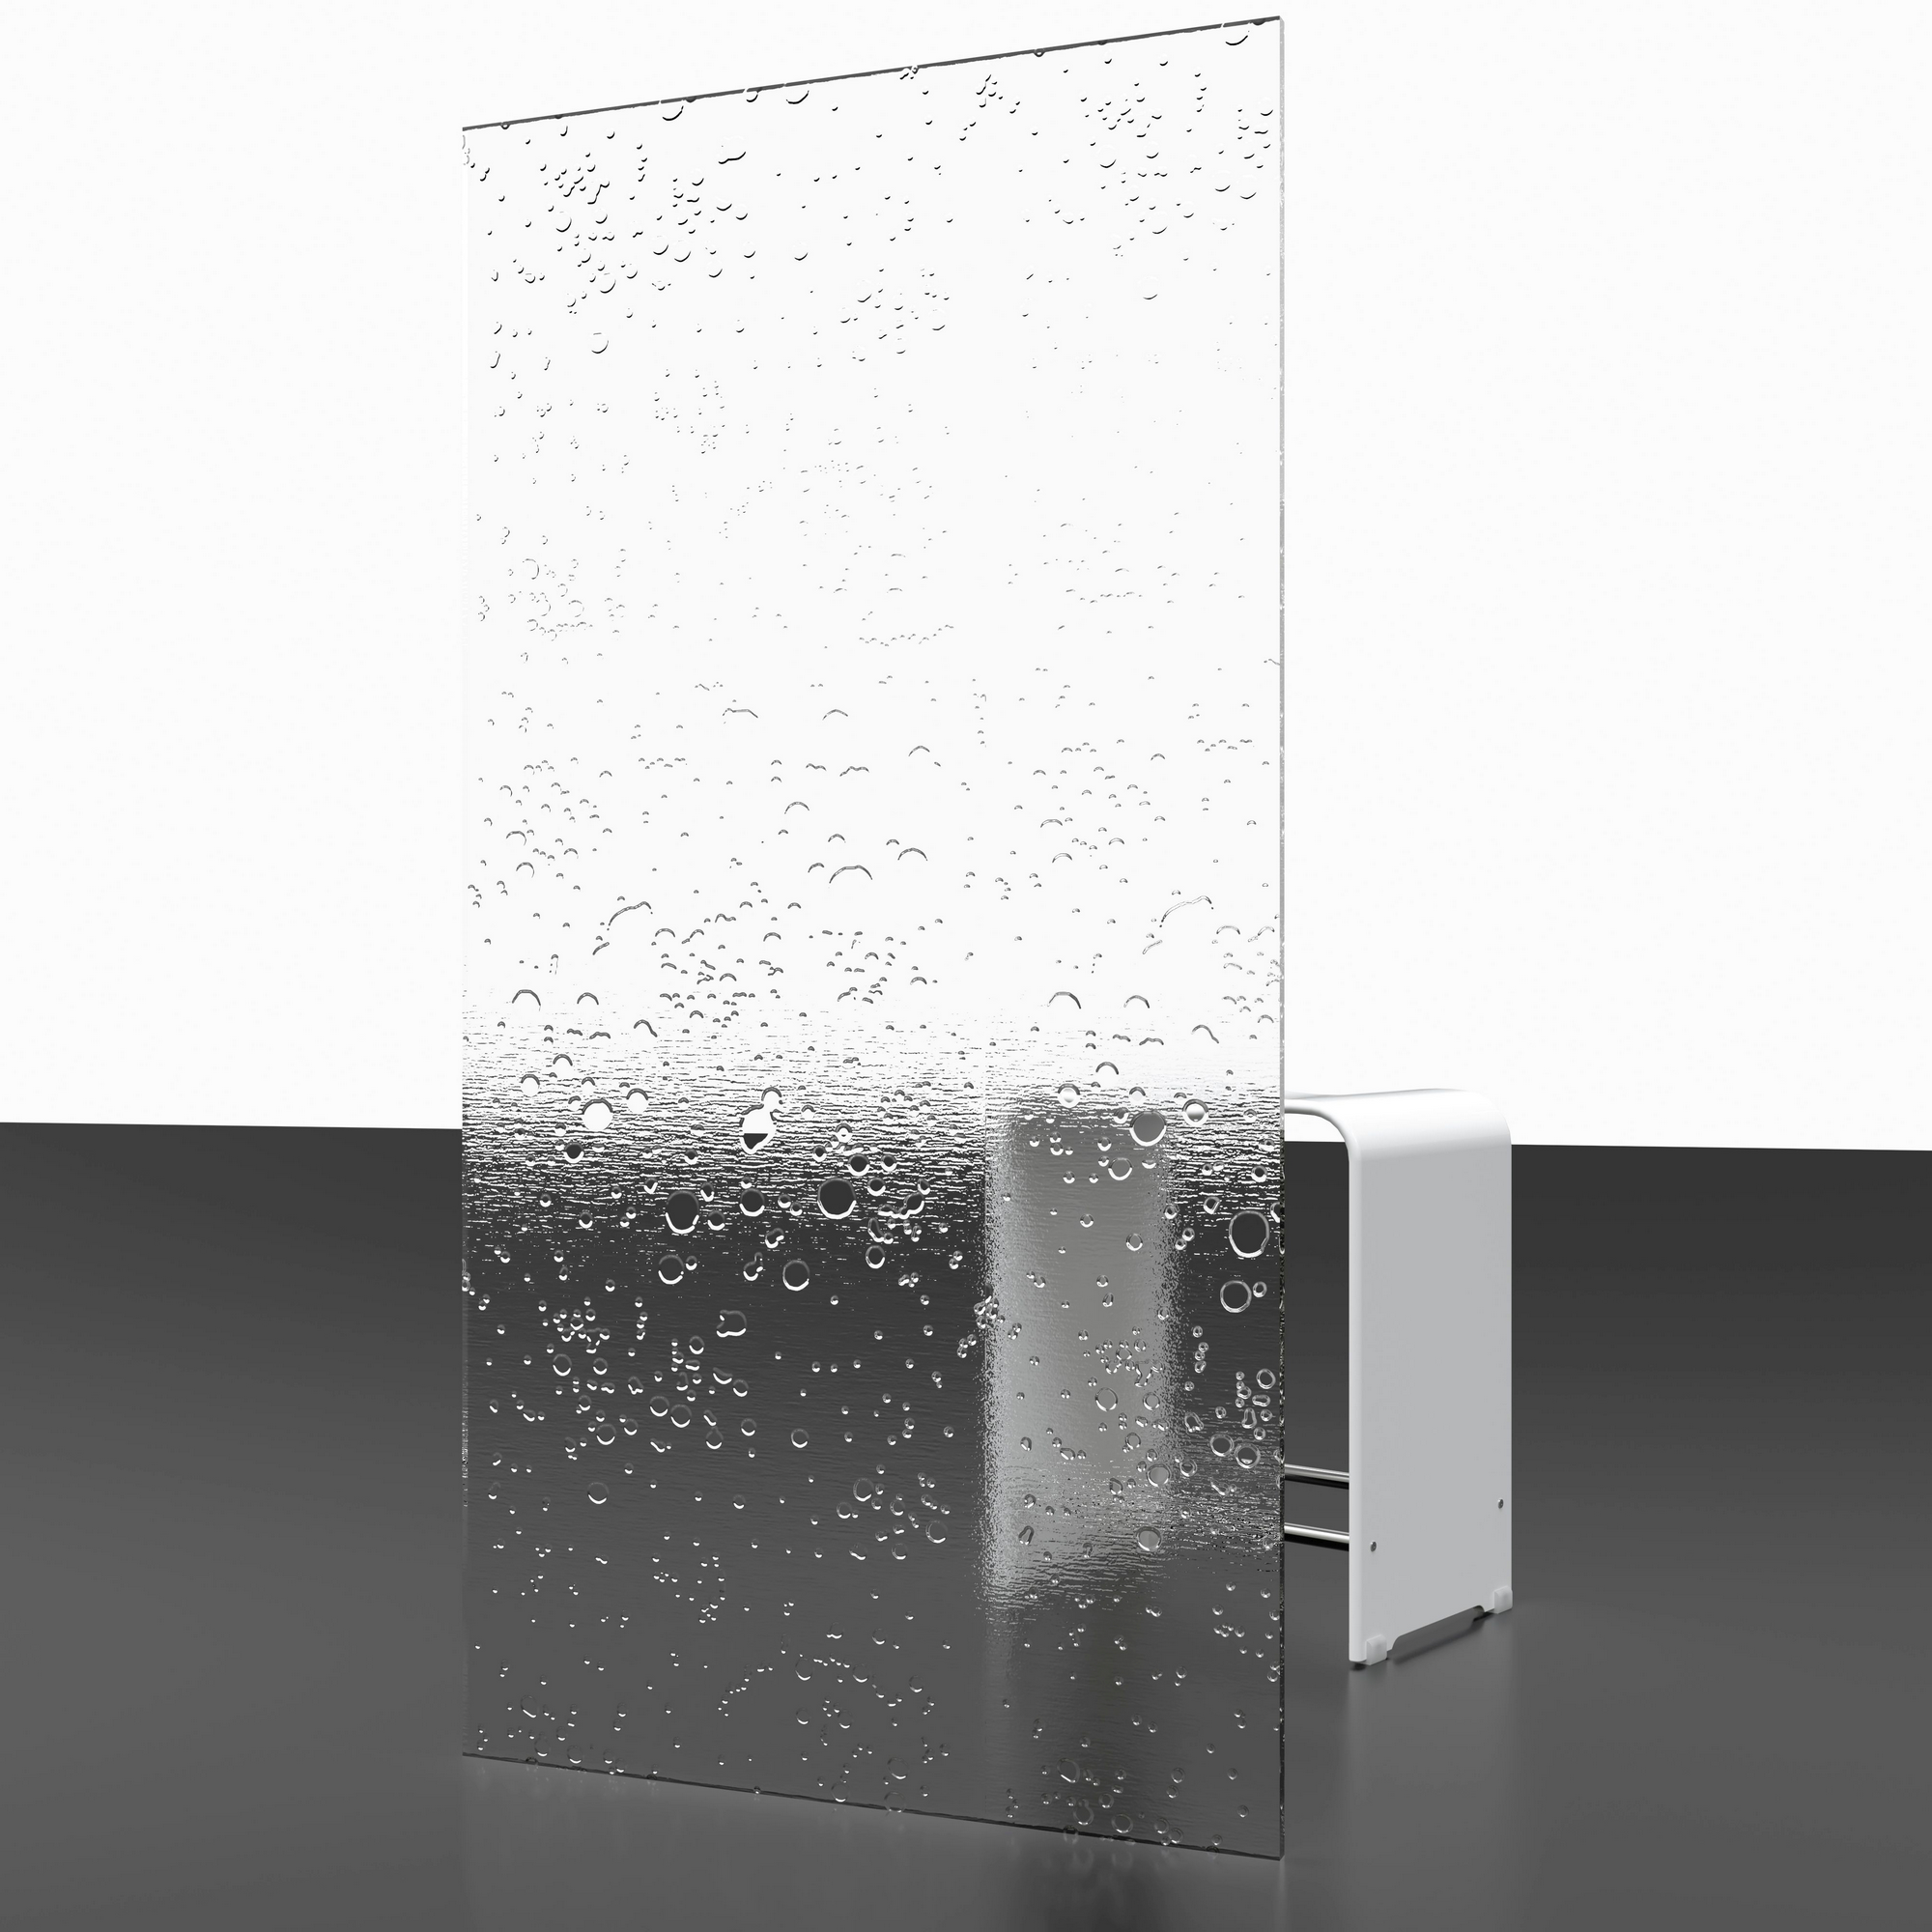 Badewannenfaltwand 2 x 3-teilig 'Komfort' Kunstglas, Alpinweiß 2 x 104 x 140 cm + product picture